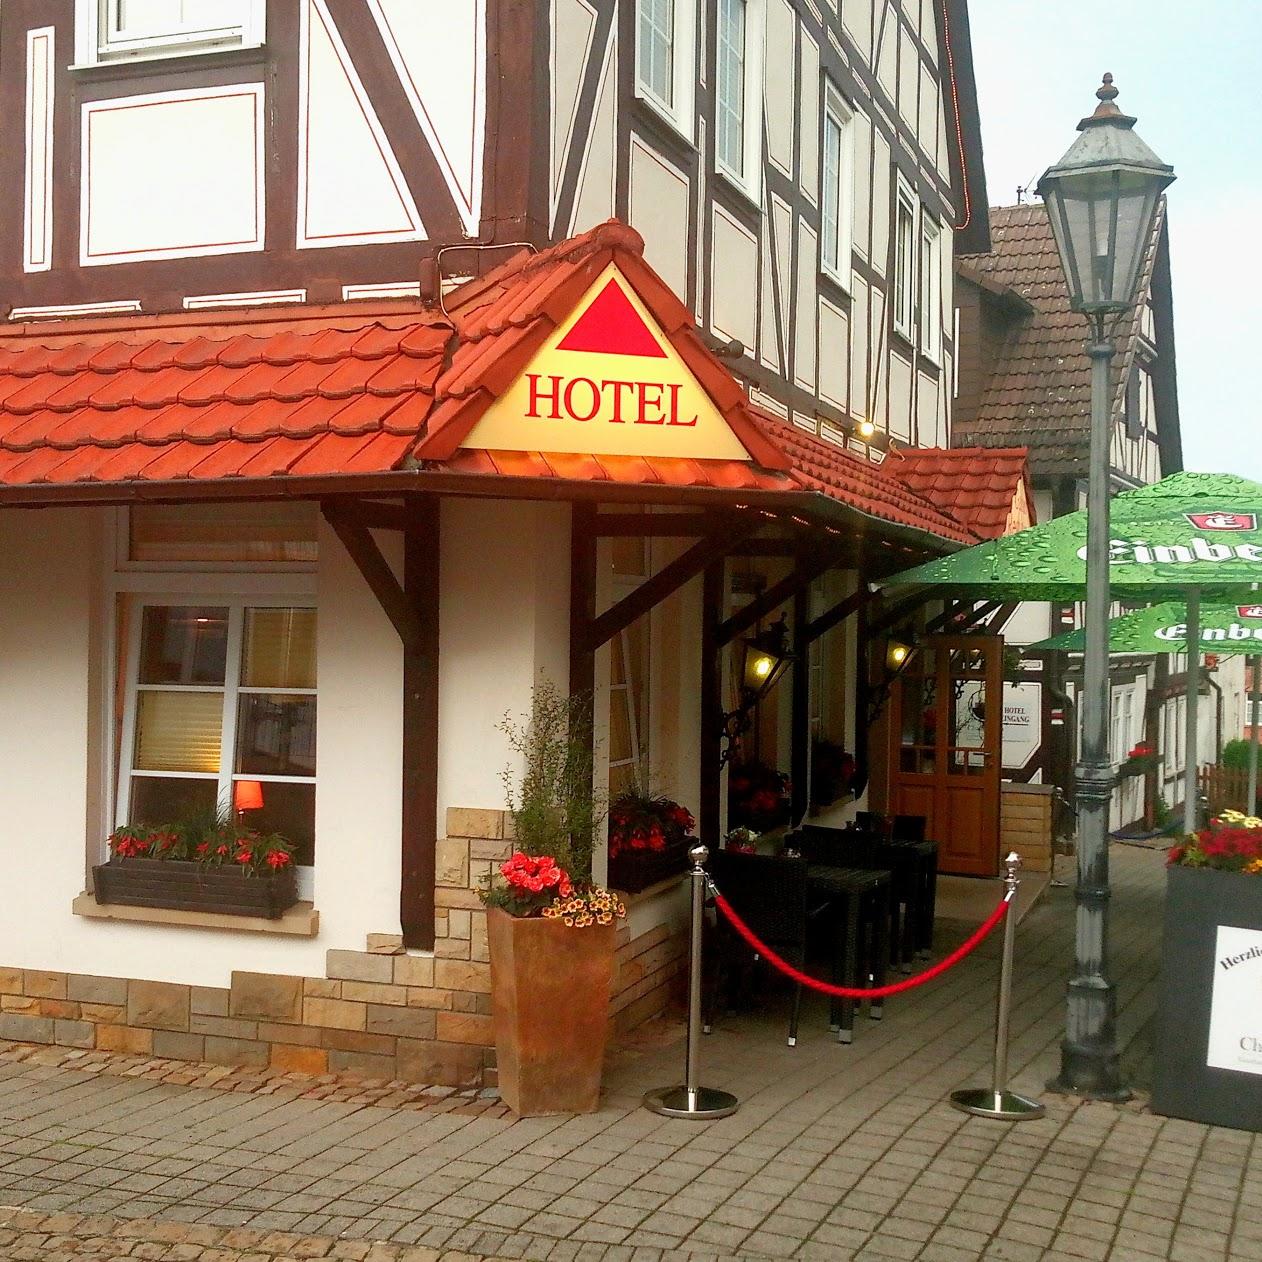 Restaurant "Hotel zum Chattenturm" in  Wolfhagen